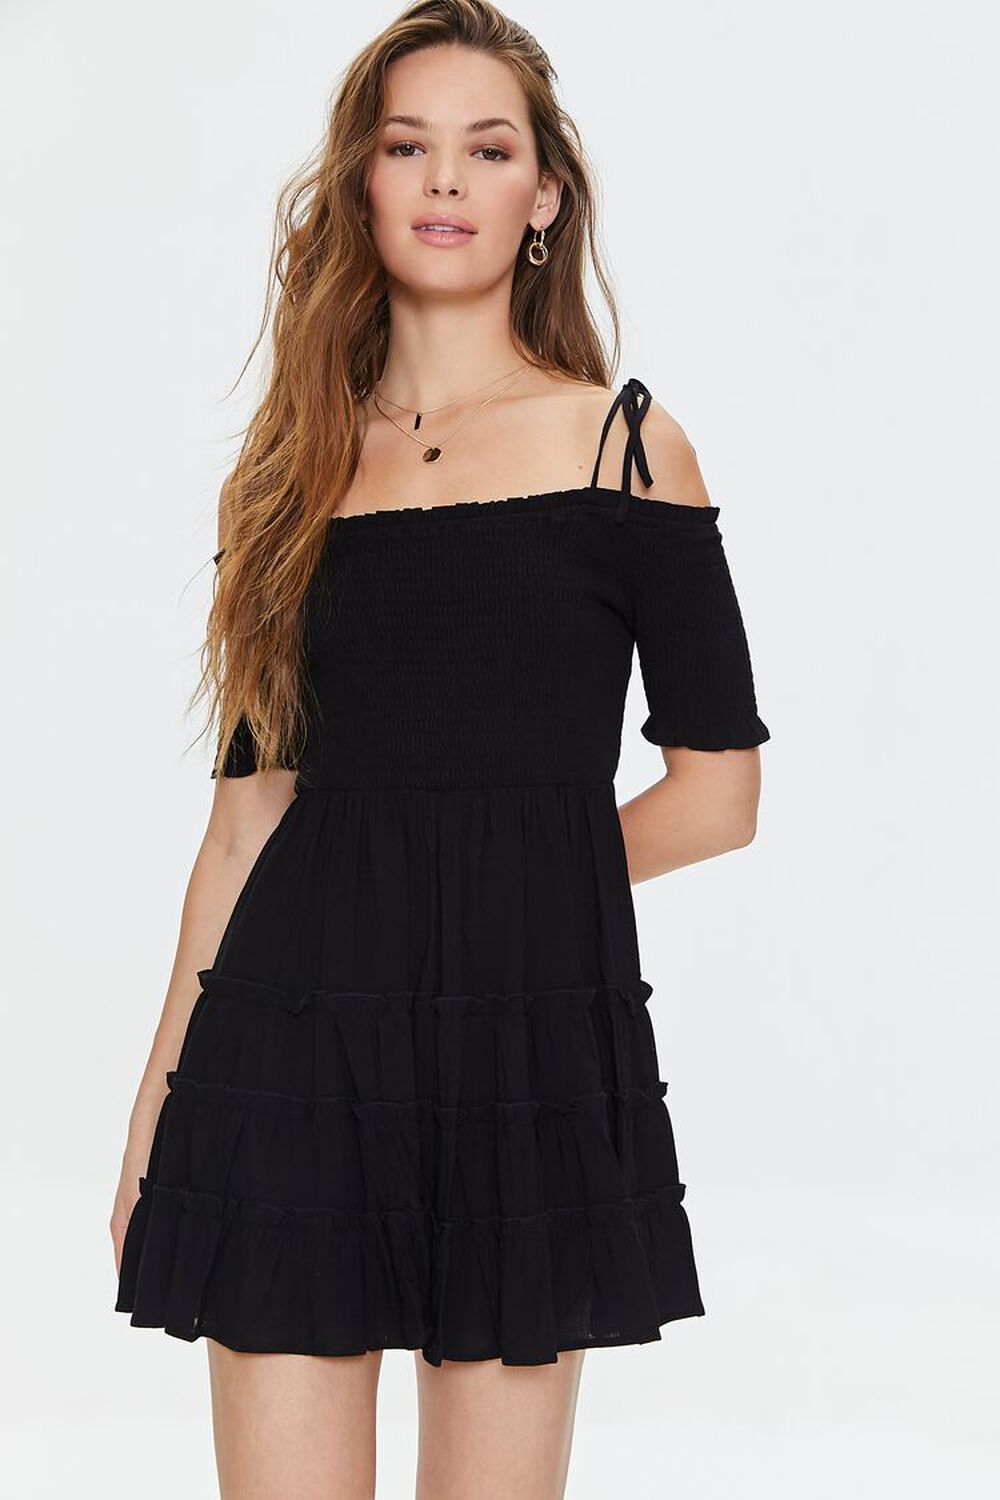 BLACK Smocked Open-Shoulder Mini Dress, image 1